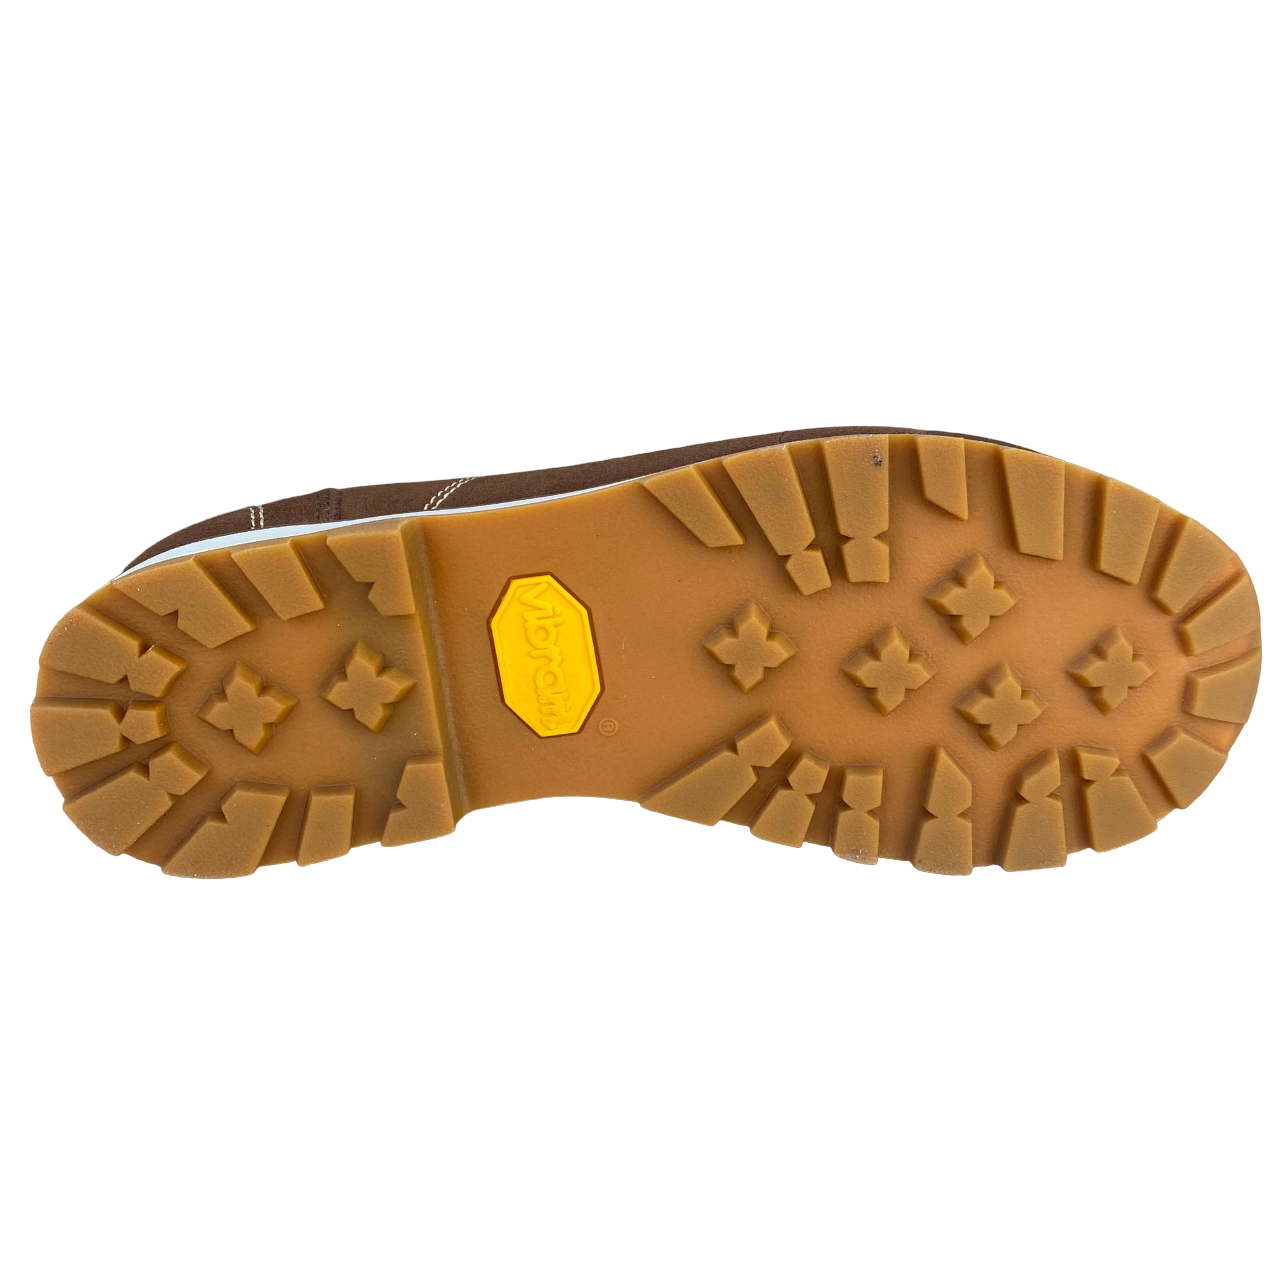 Dolomite scarpa casual 54 bassa in Goretex e Vibram 247950 EACA marrone